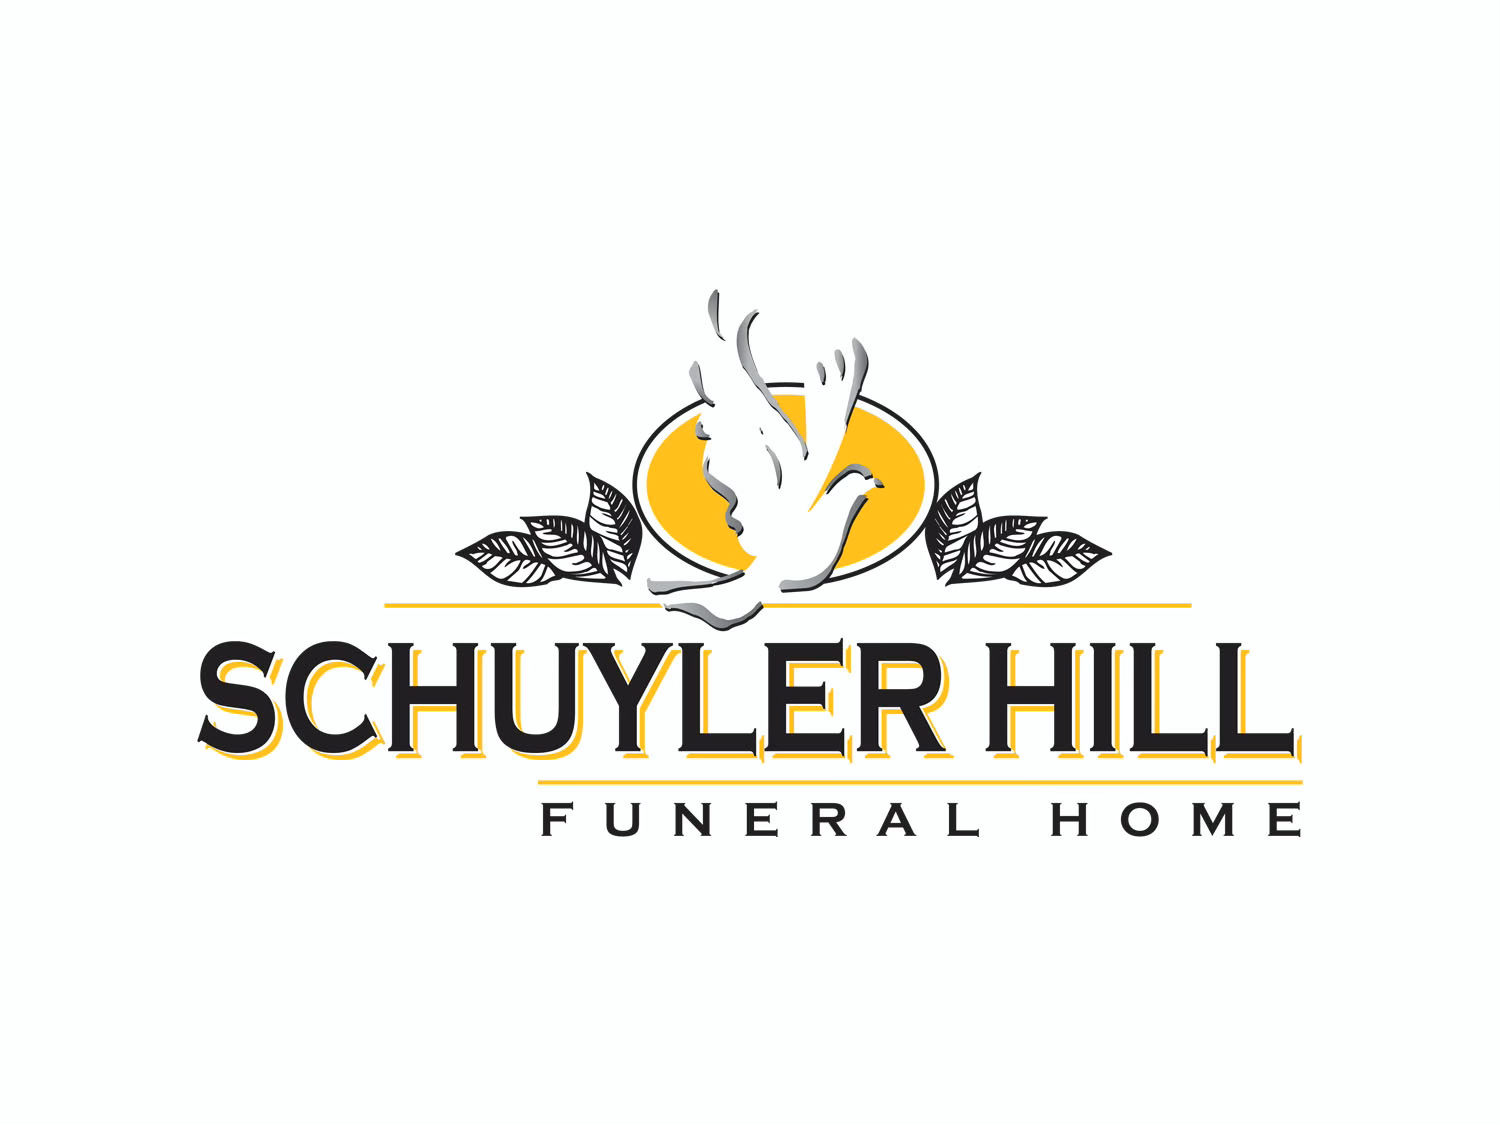 Schuyler Hill Funeral Home